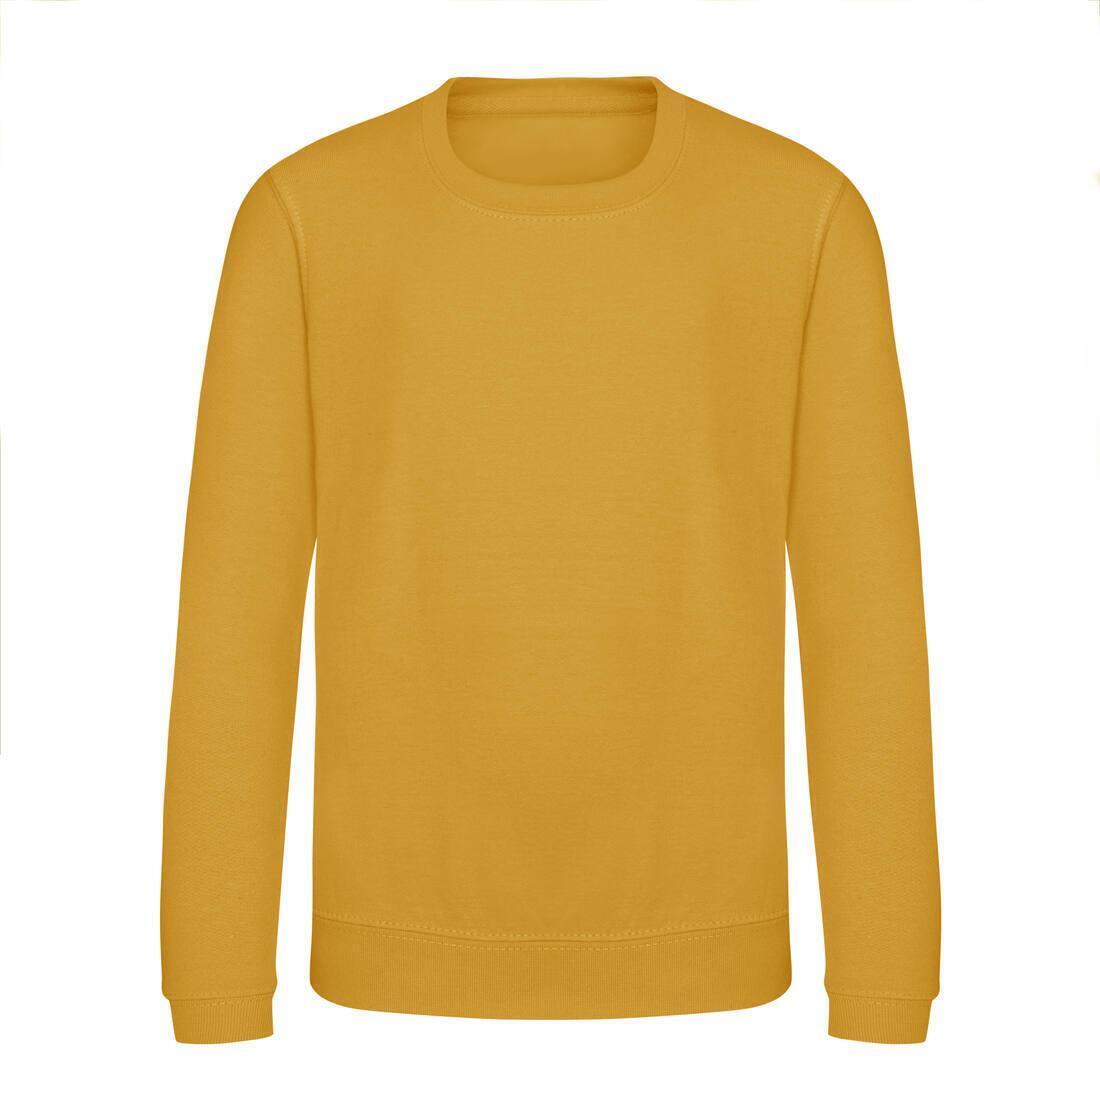 Kinder sweatshirts mosterd kleur personaliseer je sweatshirts